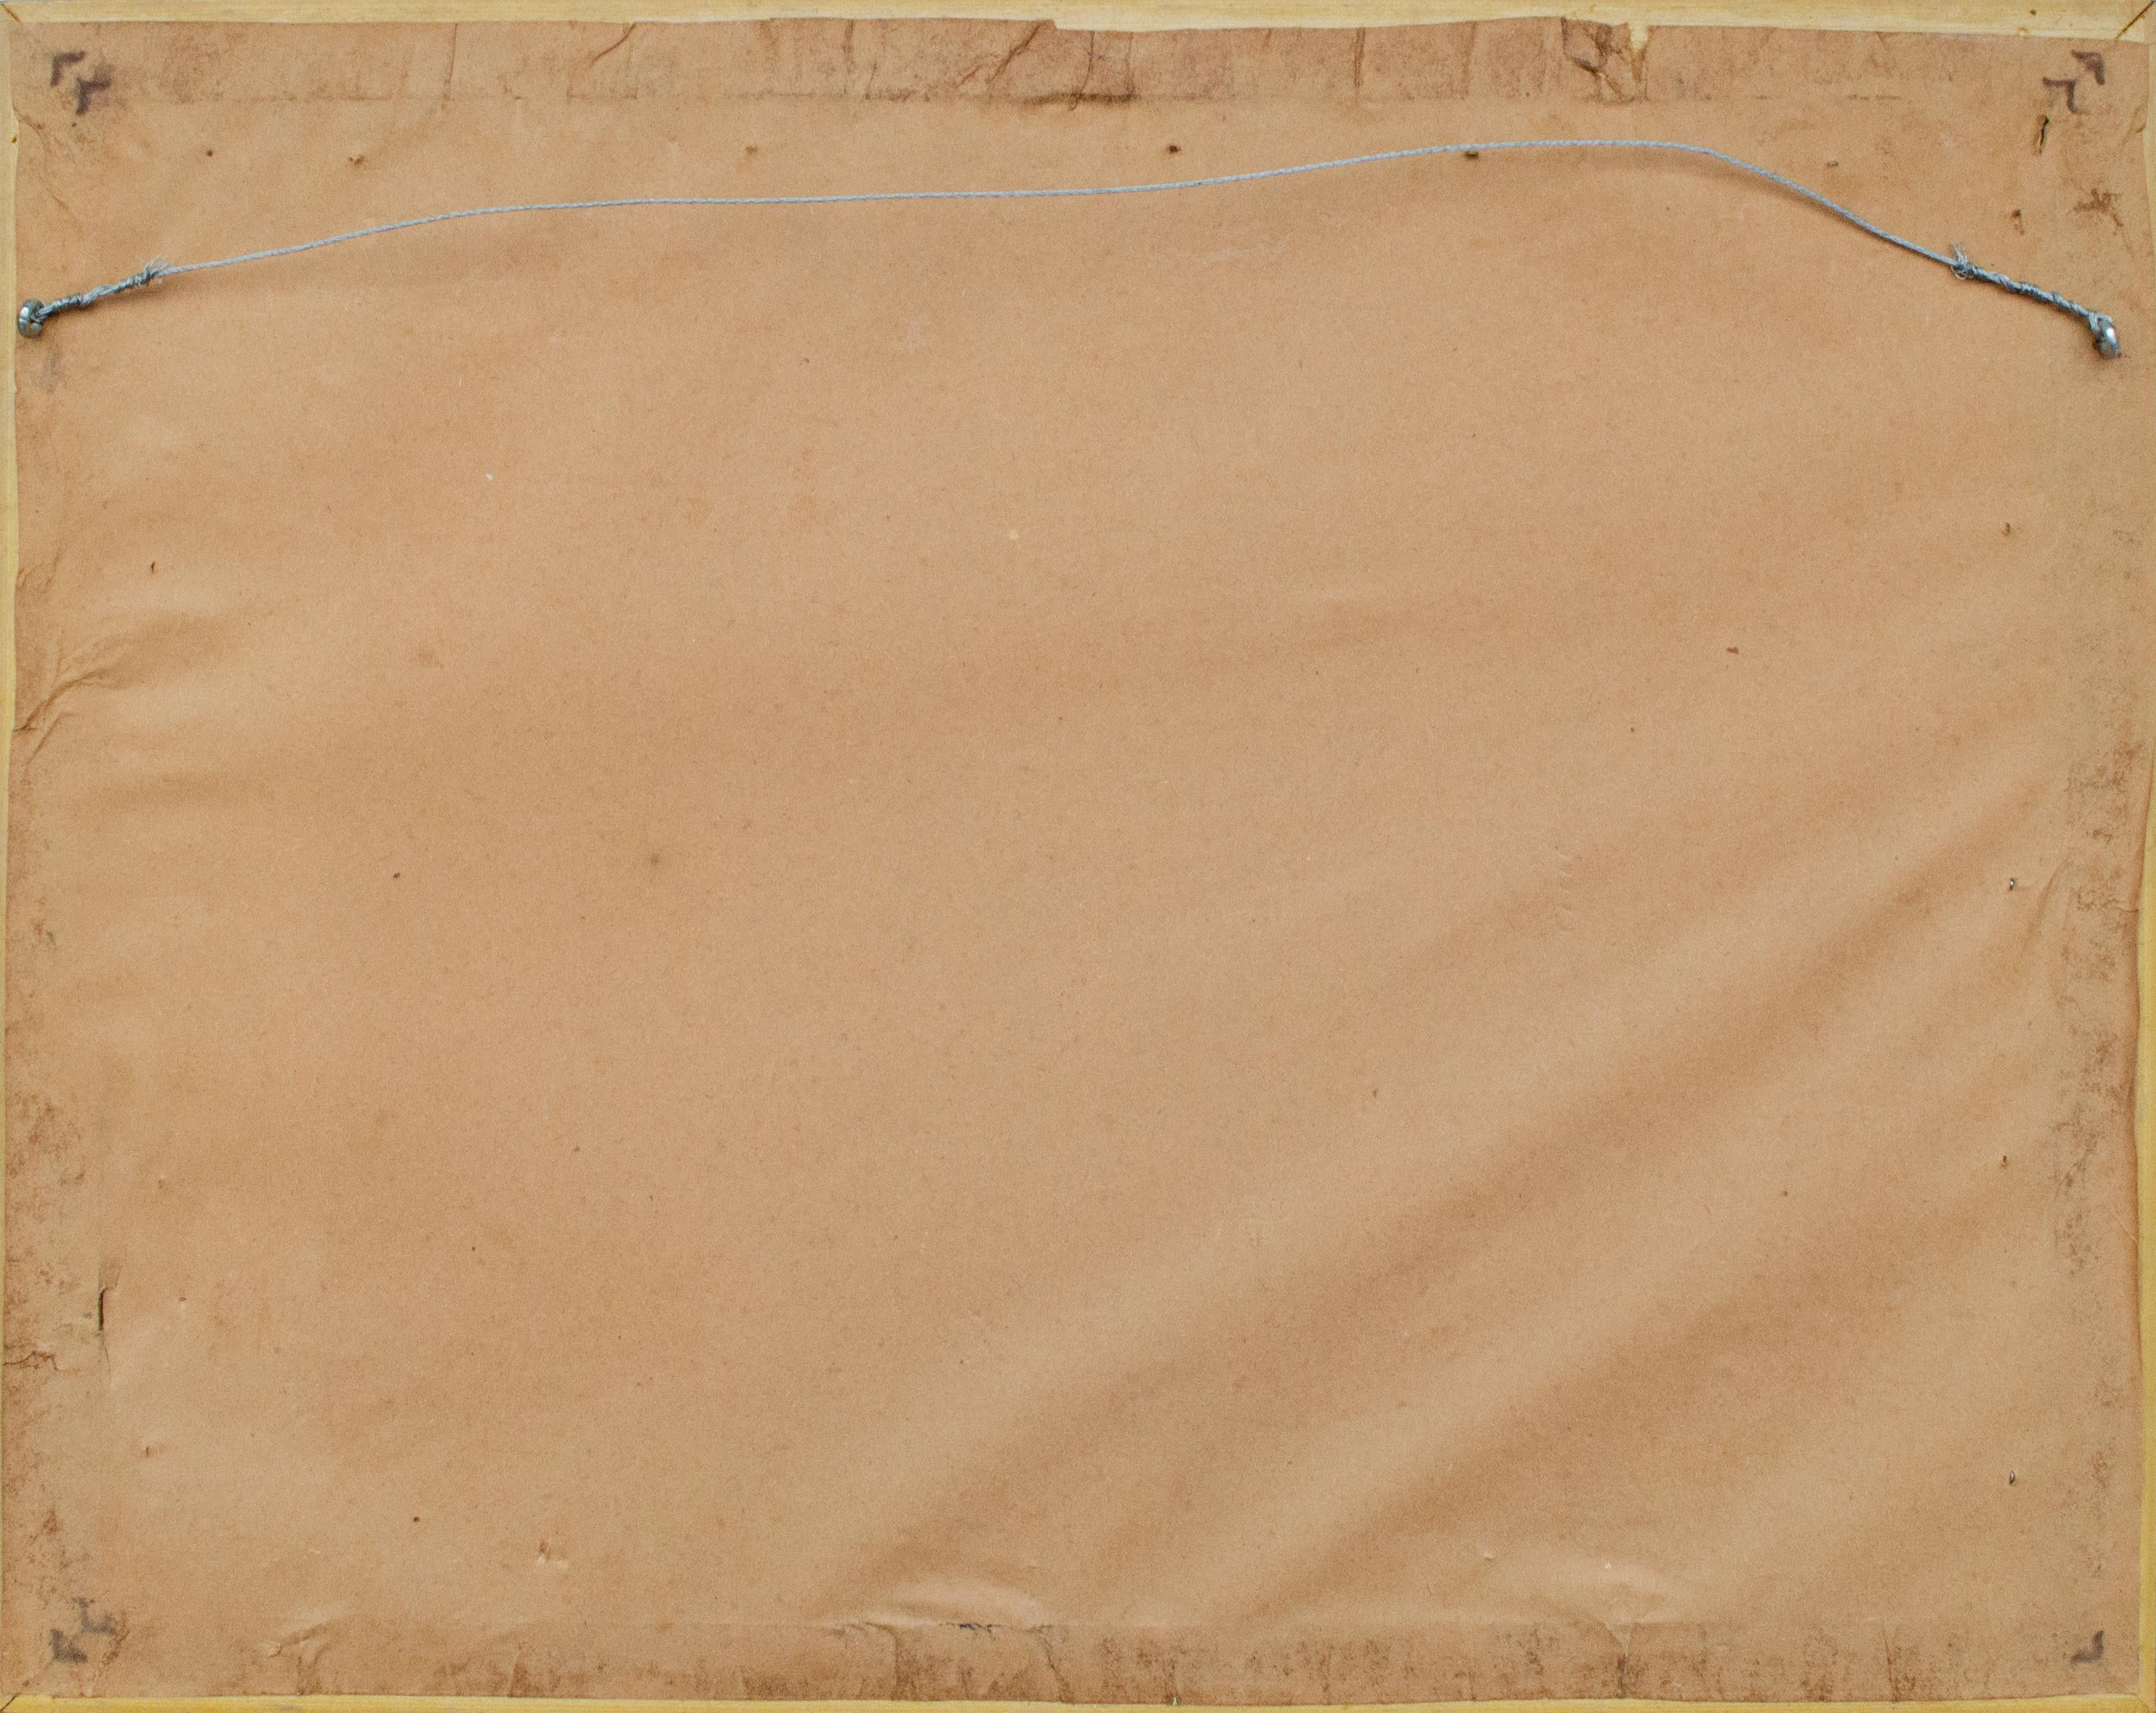 O. Casio
Ohne Titel (Mondmann), ca. 20. Jahrhundert
Gemischte Medien auf Papier
Ansicht: 10 x 13 1/4 Zoll.
Gerahmt: 16 x 20 Zoll.
Signiert unten rechts: O. Casio
